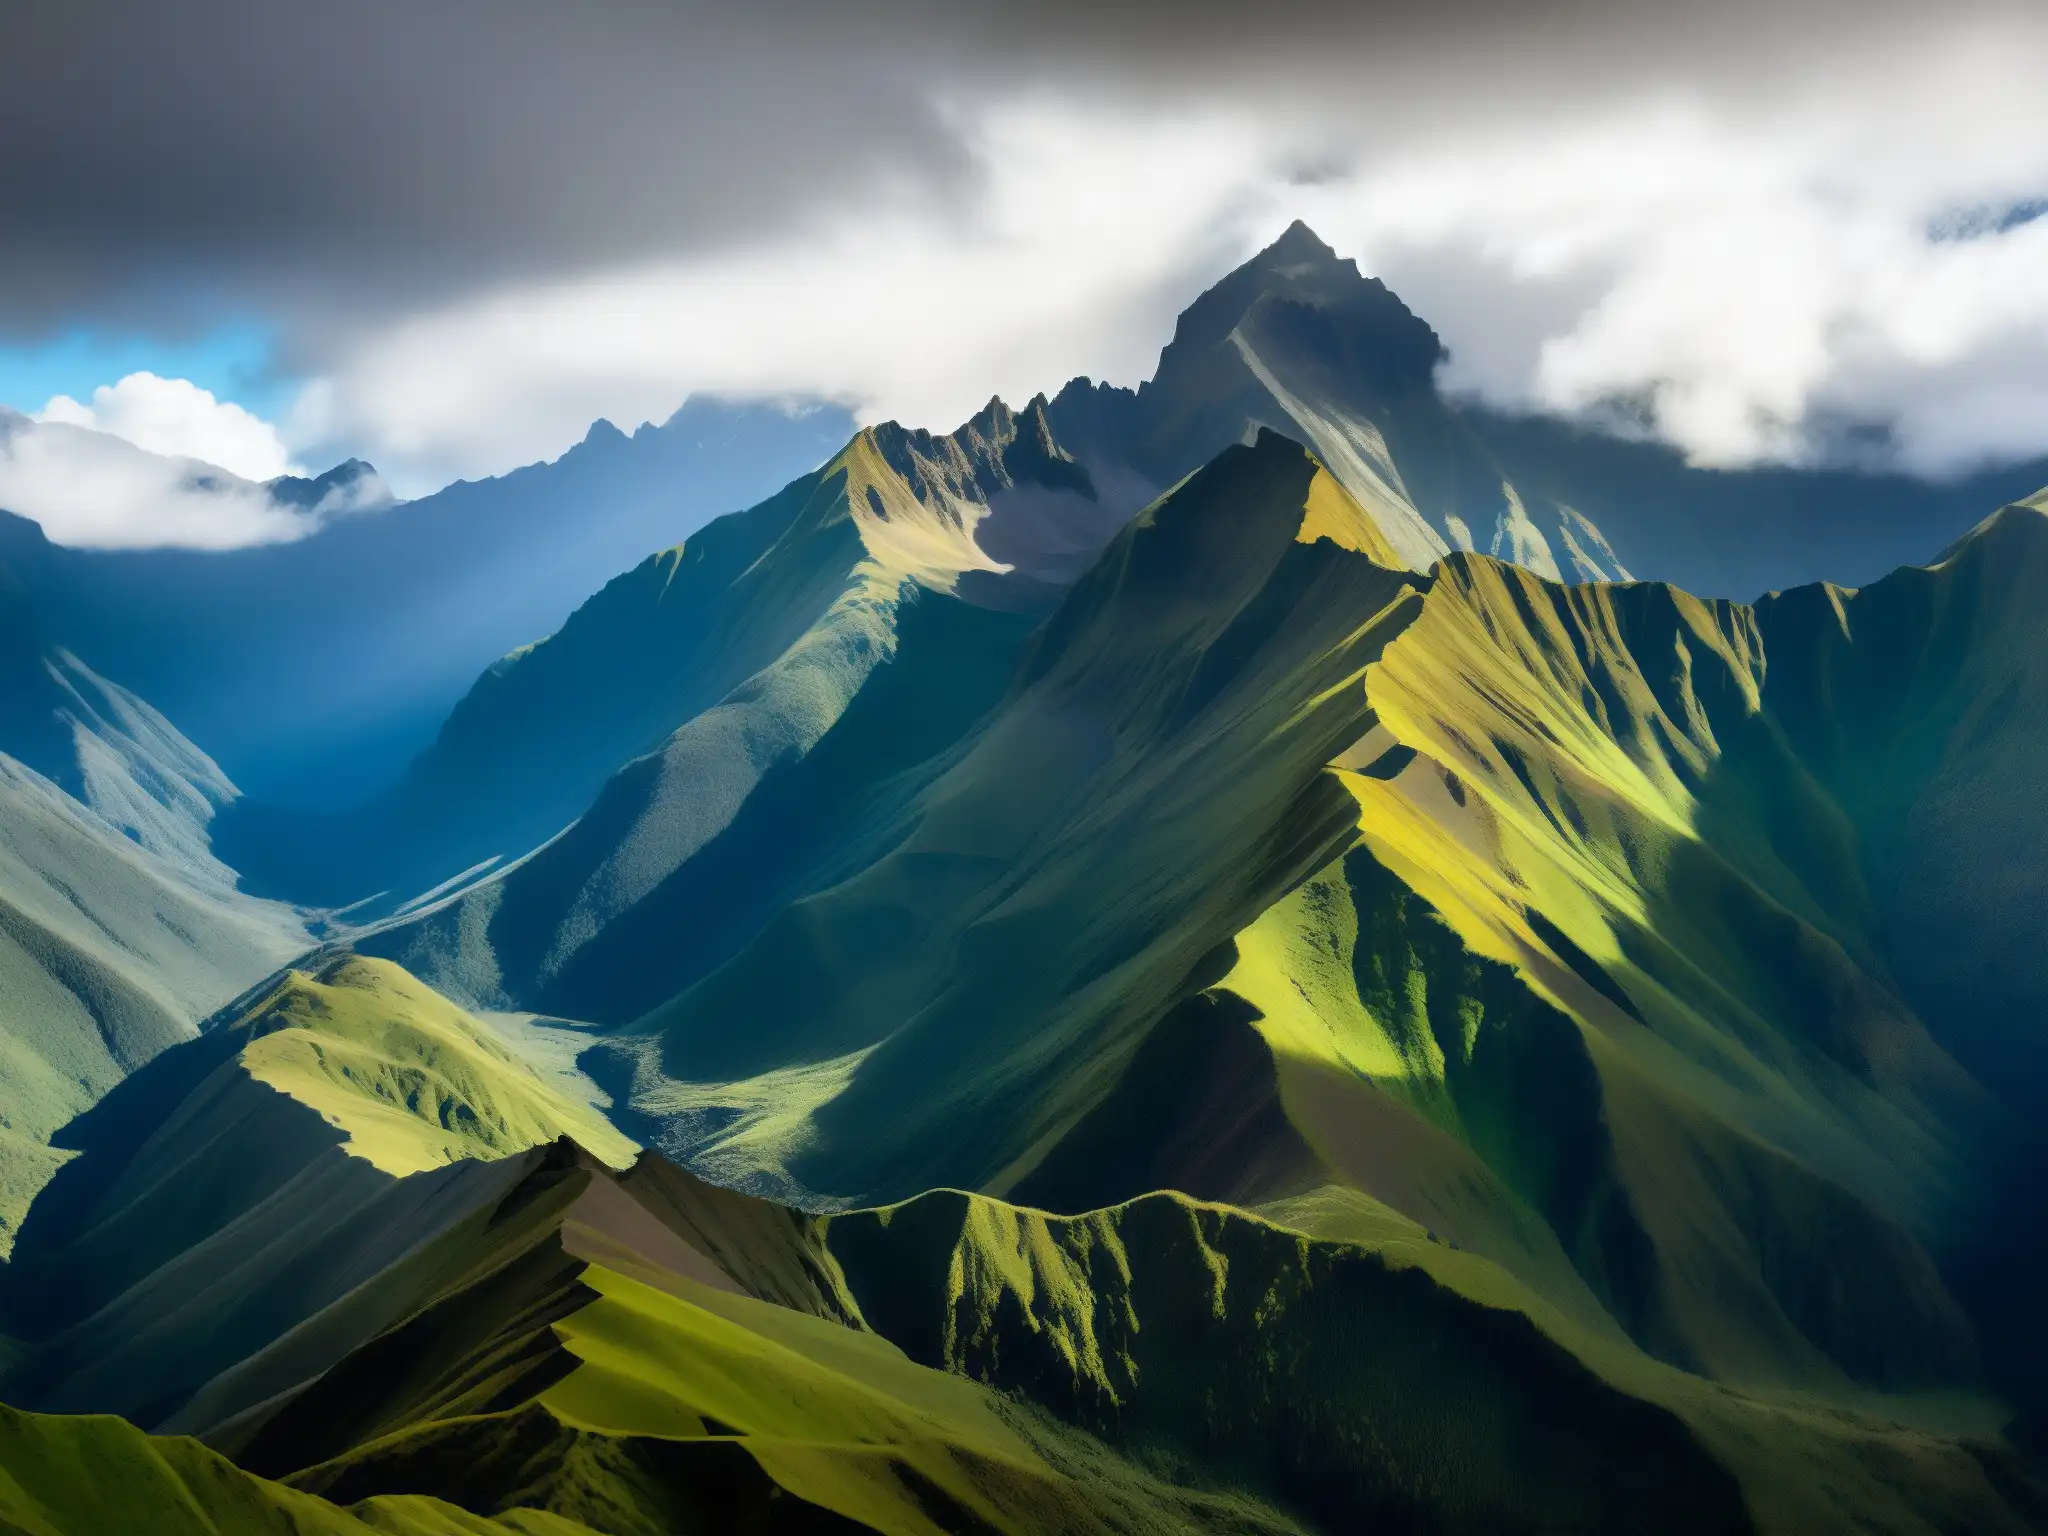 El Monstruo del Páramo Cordillera Andina emerge entre la neblina, con picos imponentes y el vibrante verdor del páramo en primer plano